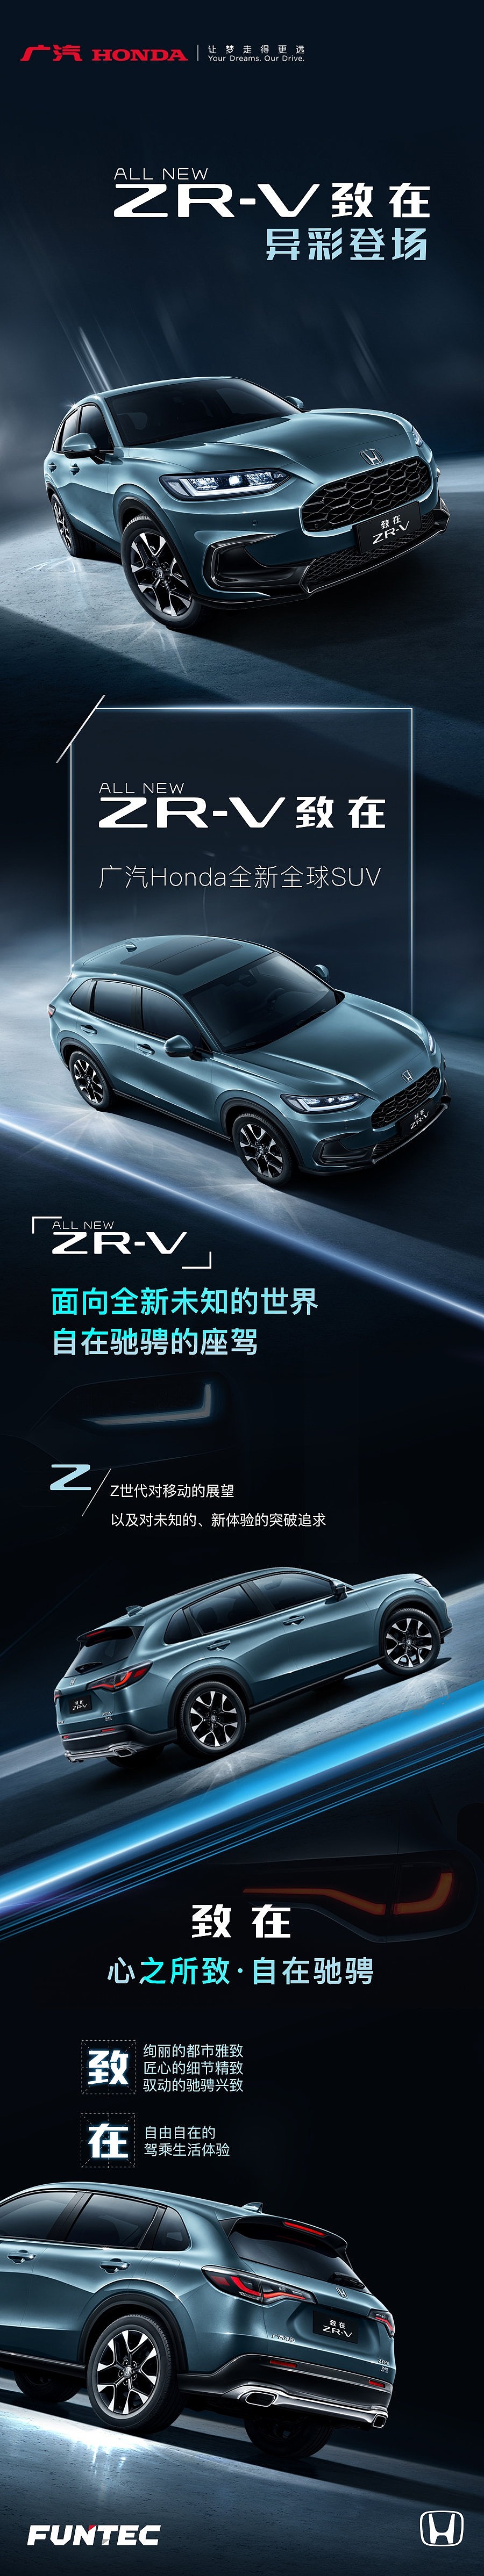 广汽本田全新SUV名称公布：ZR-V 基于第11代思域打造 - 1